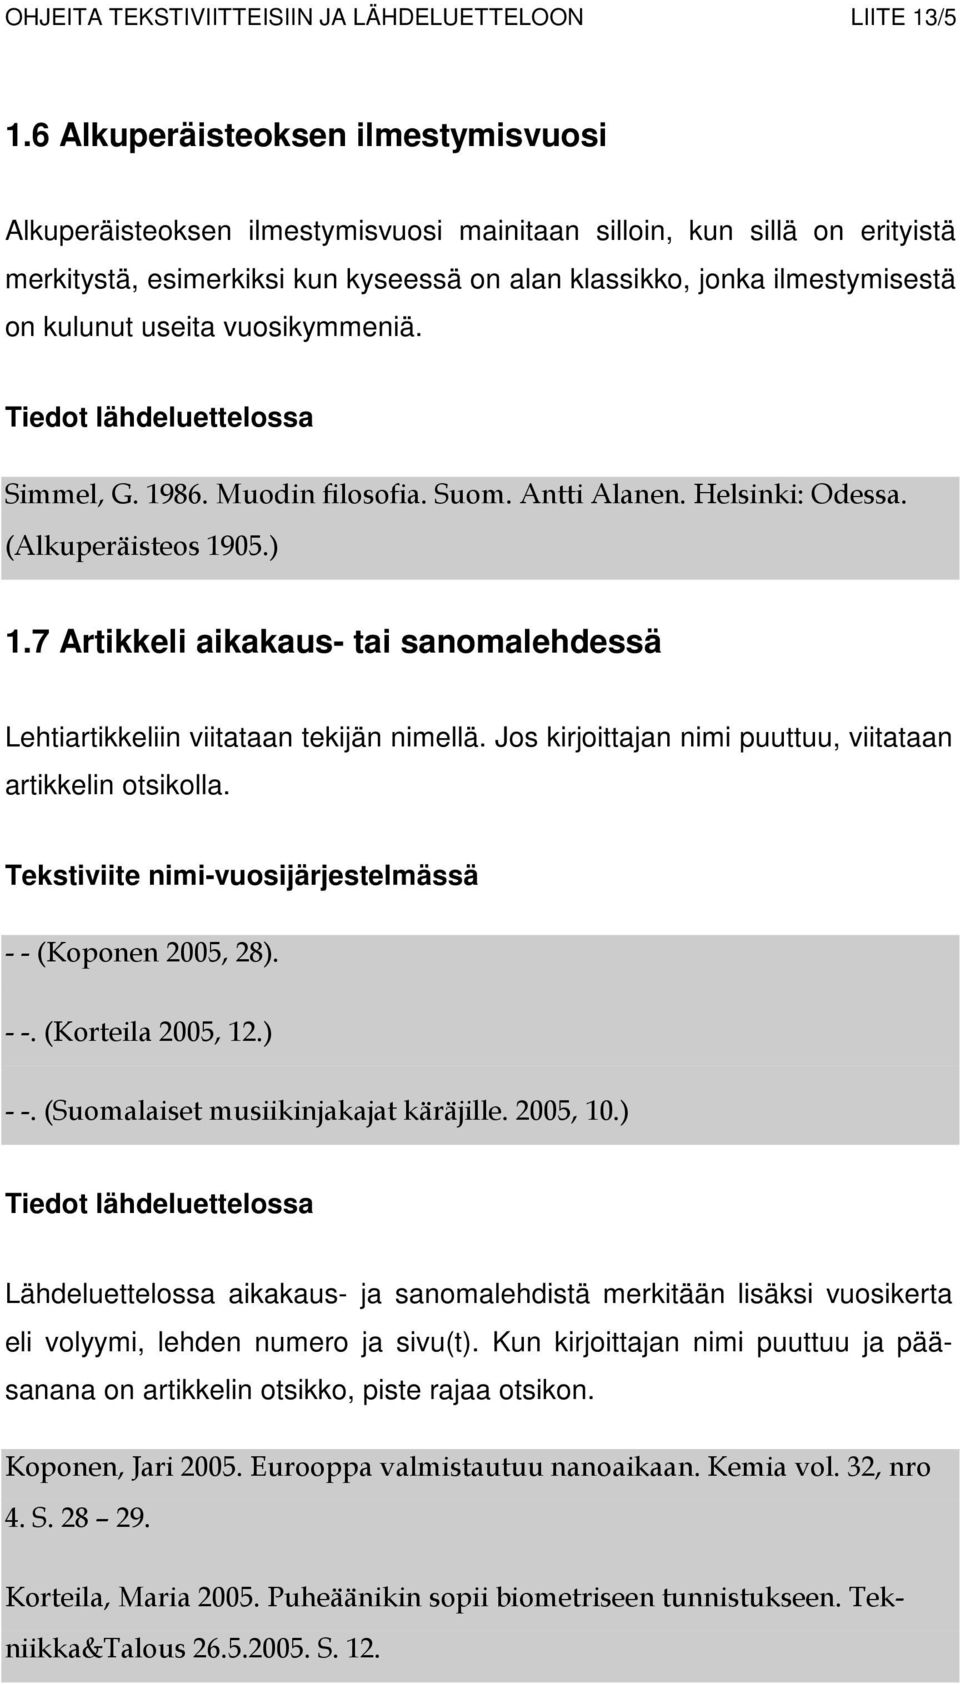 useita vuosikymmeniä. Simmel, G. 1986. Muodin filosofia. Suom. Antti Alanen. Helsinki: Odessa. (Alkuperäisteos 1905.) 1.